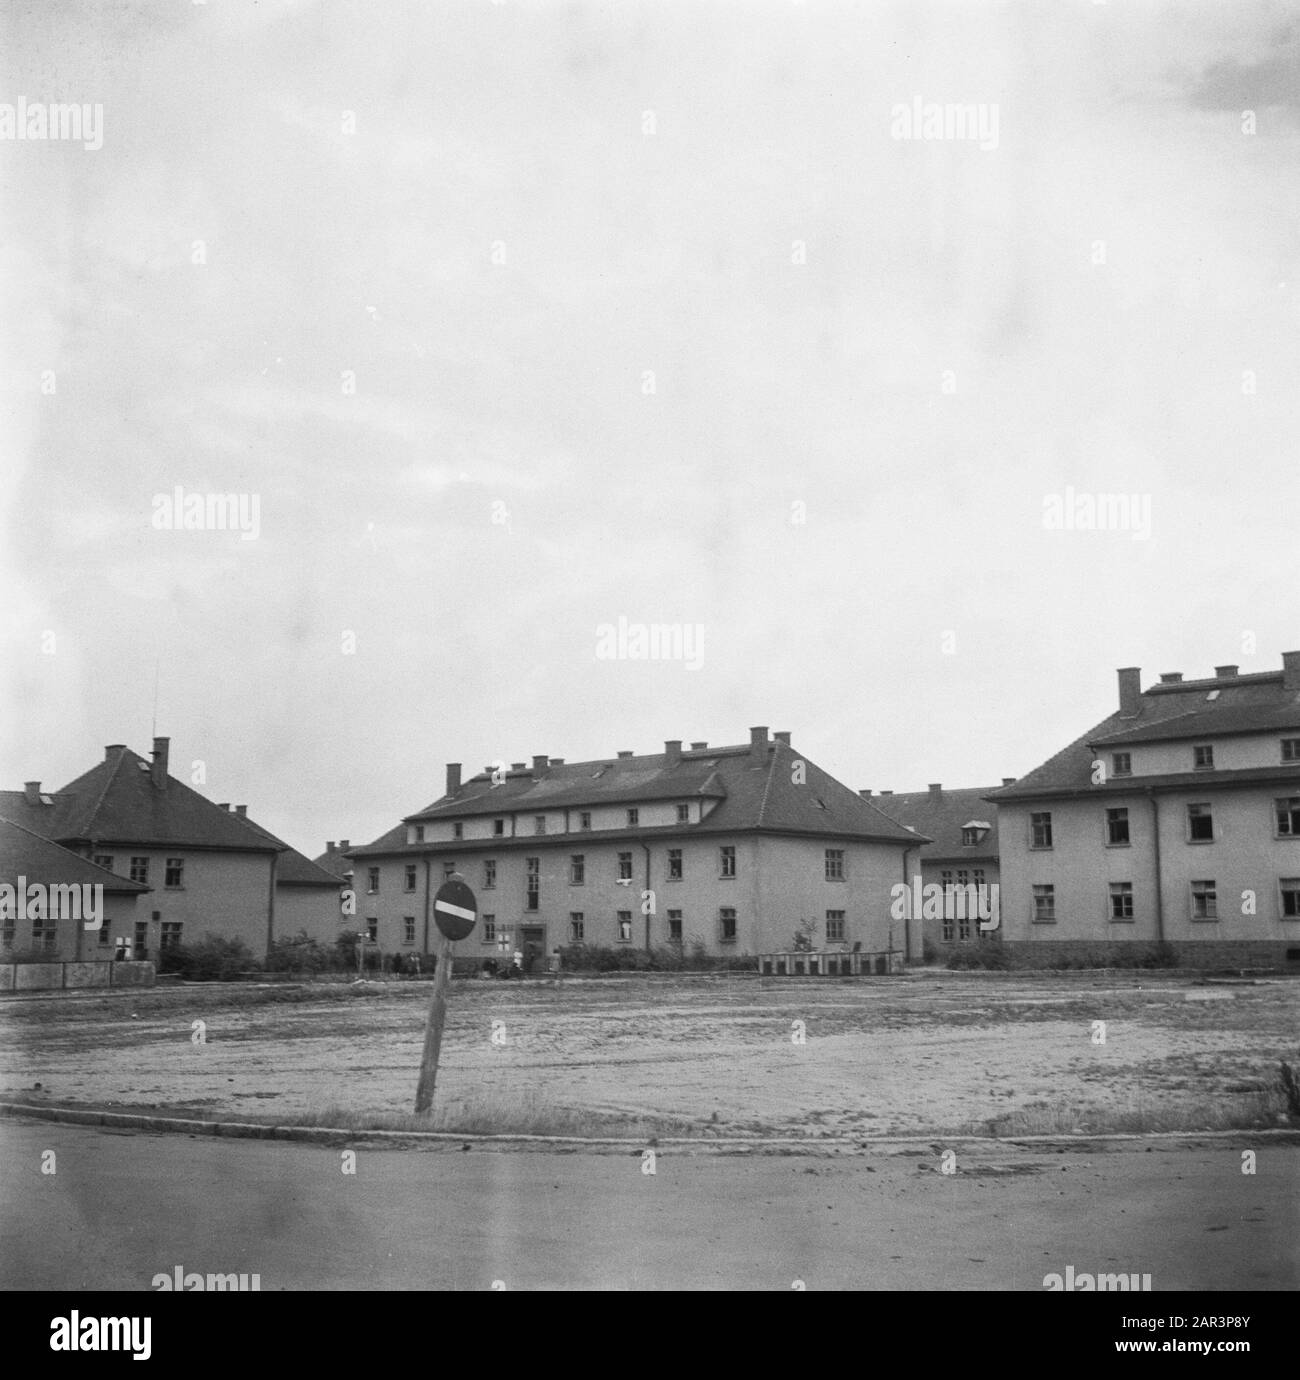 Campo di rimpatrio Bergen-Belsen edificio con iscrizione M.B. 57 e Croce Rossa Data: 1945 luogo: Bergen-Belsen, Germania Parole Chiave: Campi di concentramento, rimpatrio, seconda guerra mondiale Foto Stock